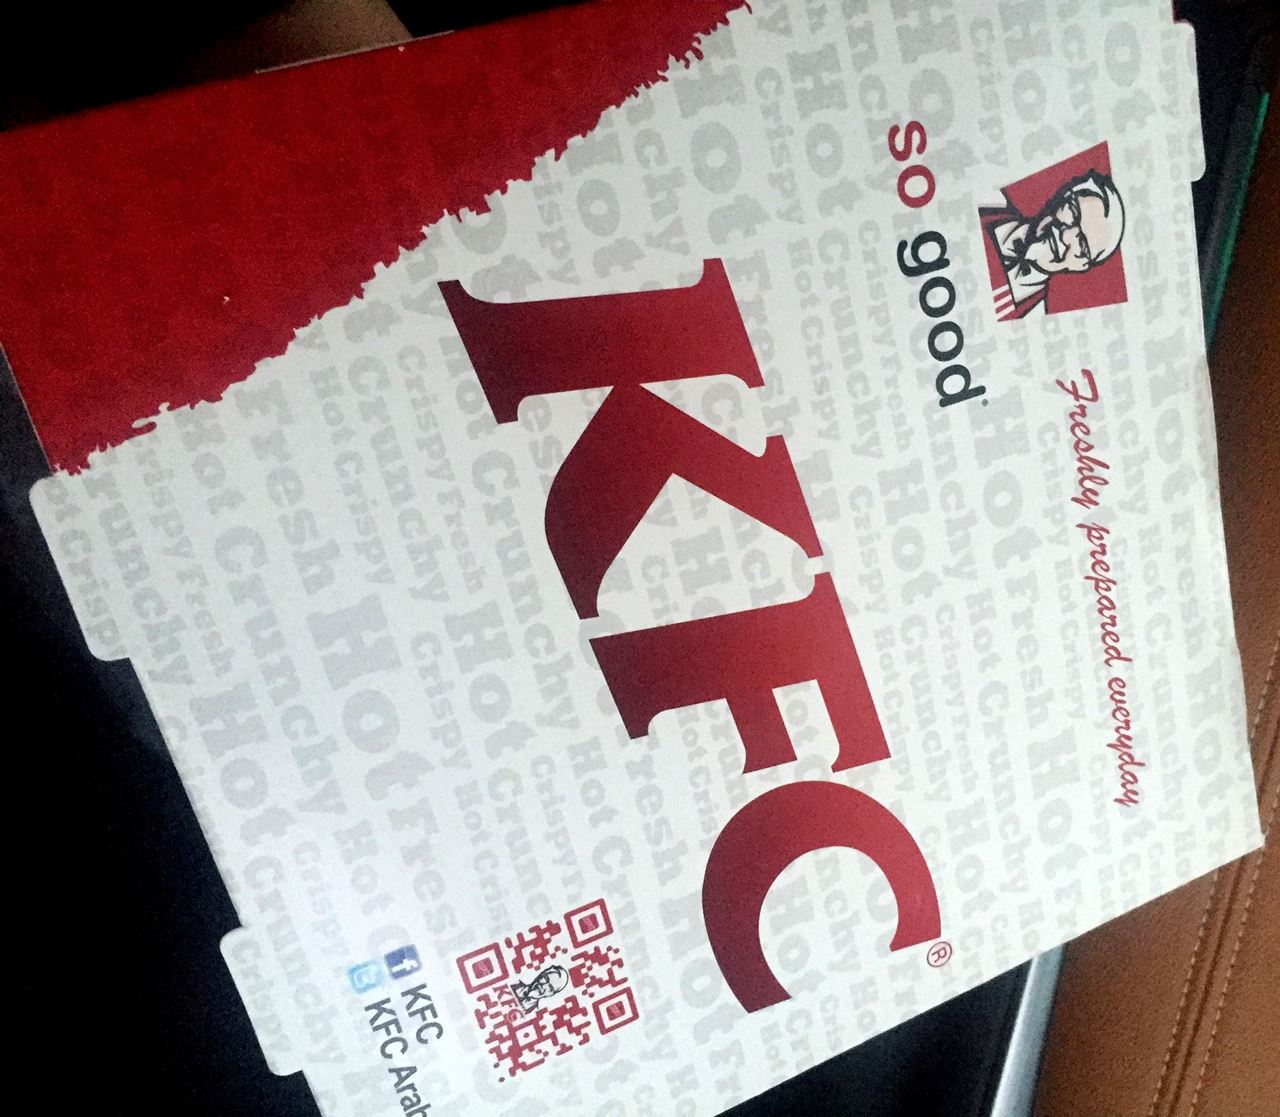 KFC Zinger Shrimpo meal pack